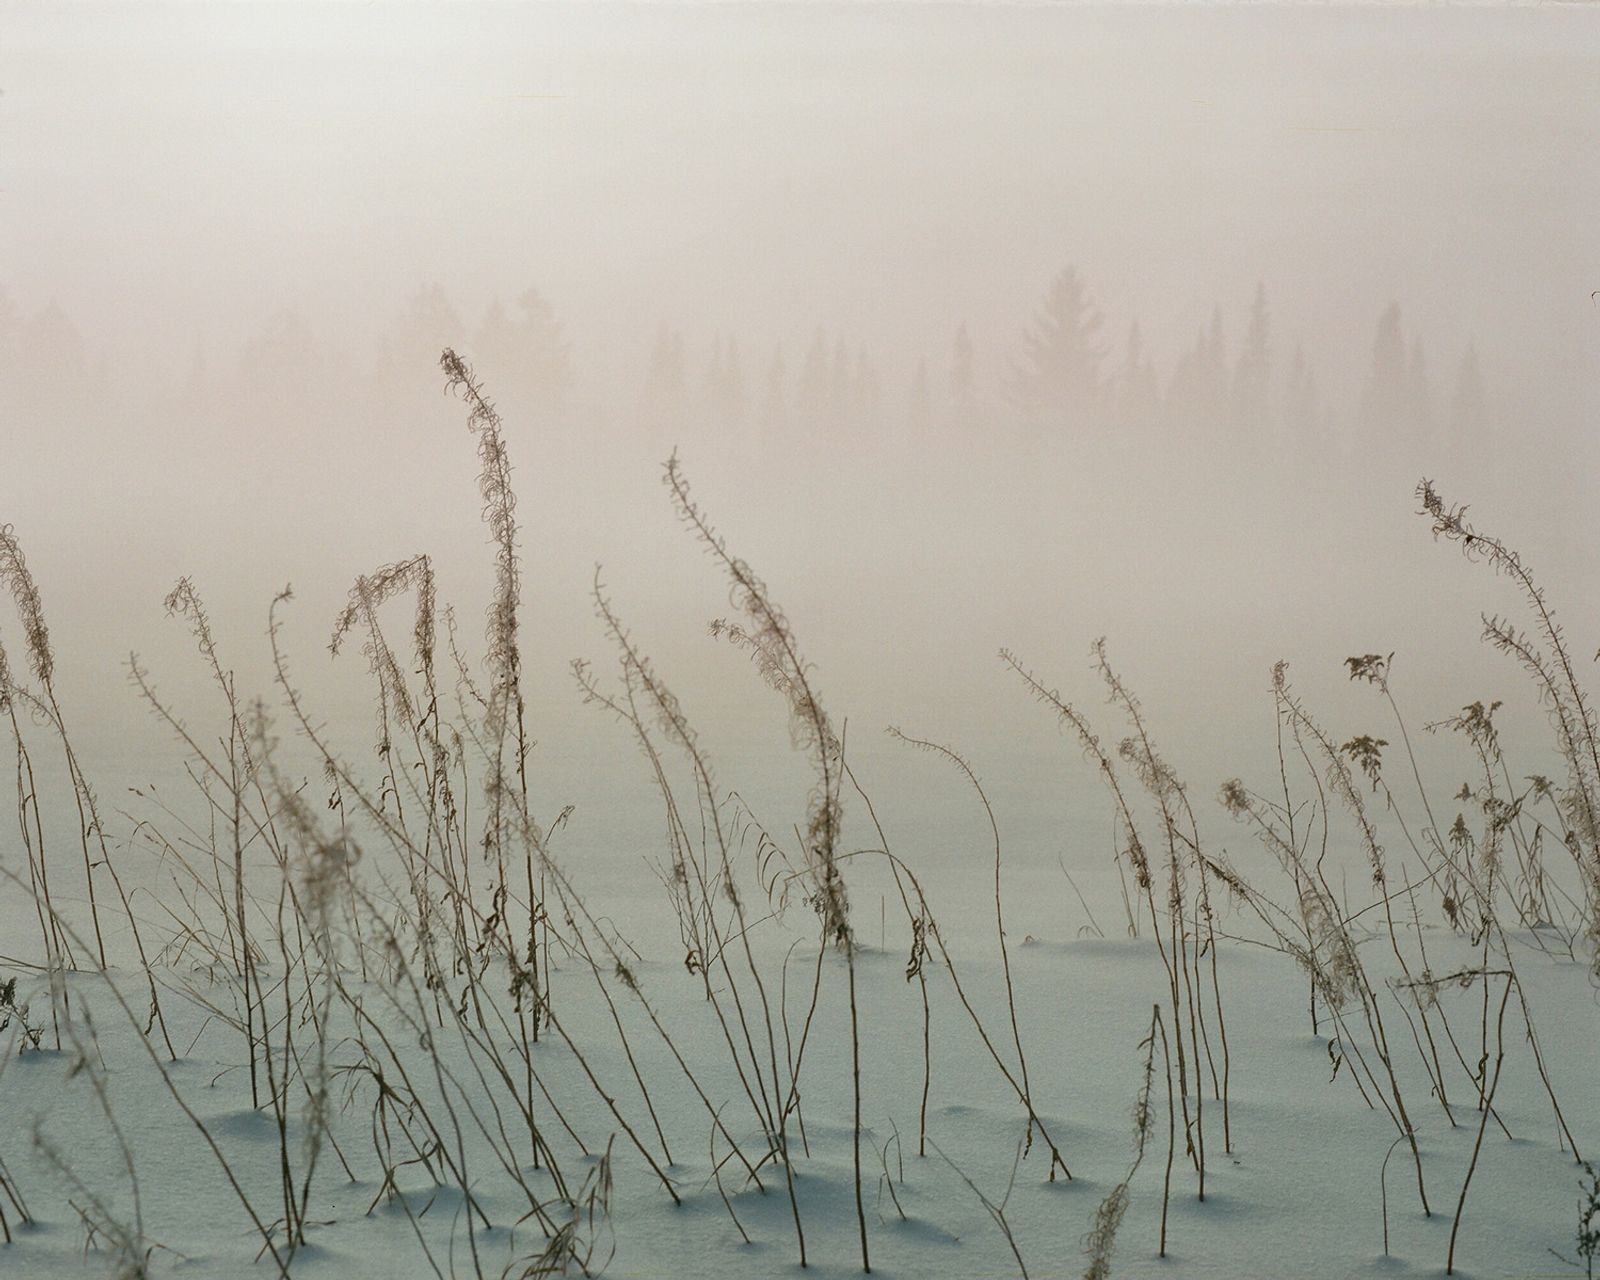 © Ekaterina Vasilyeva - Image from the Canyon diary photography project